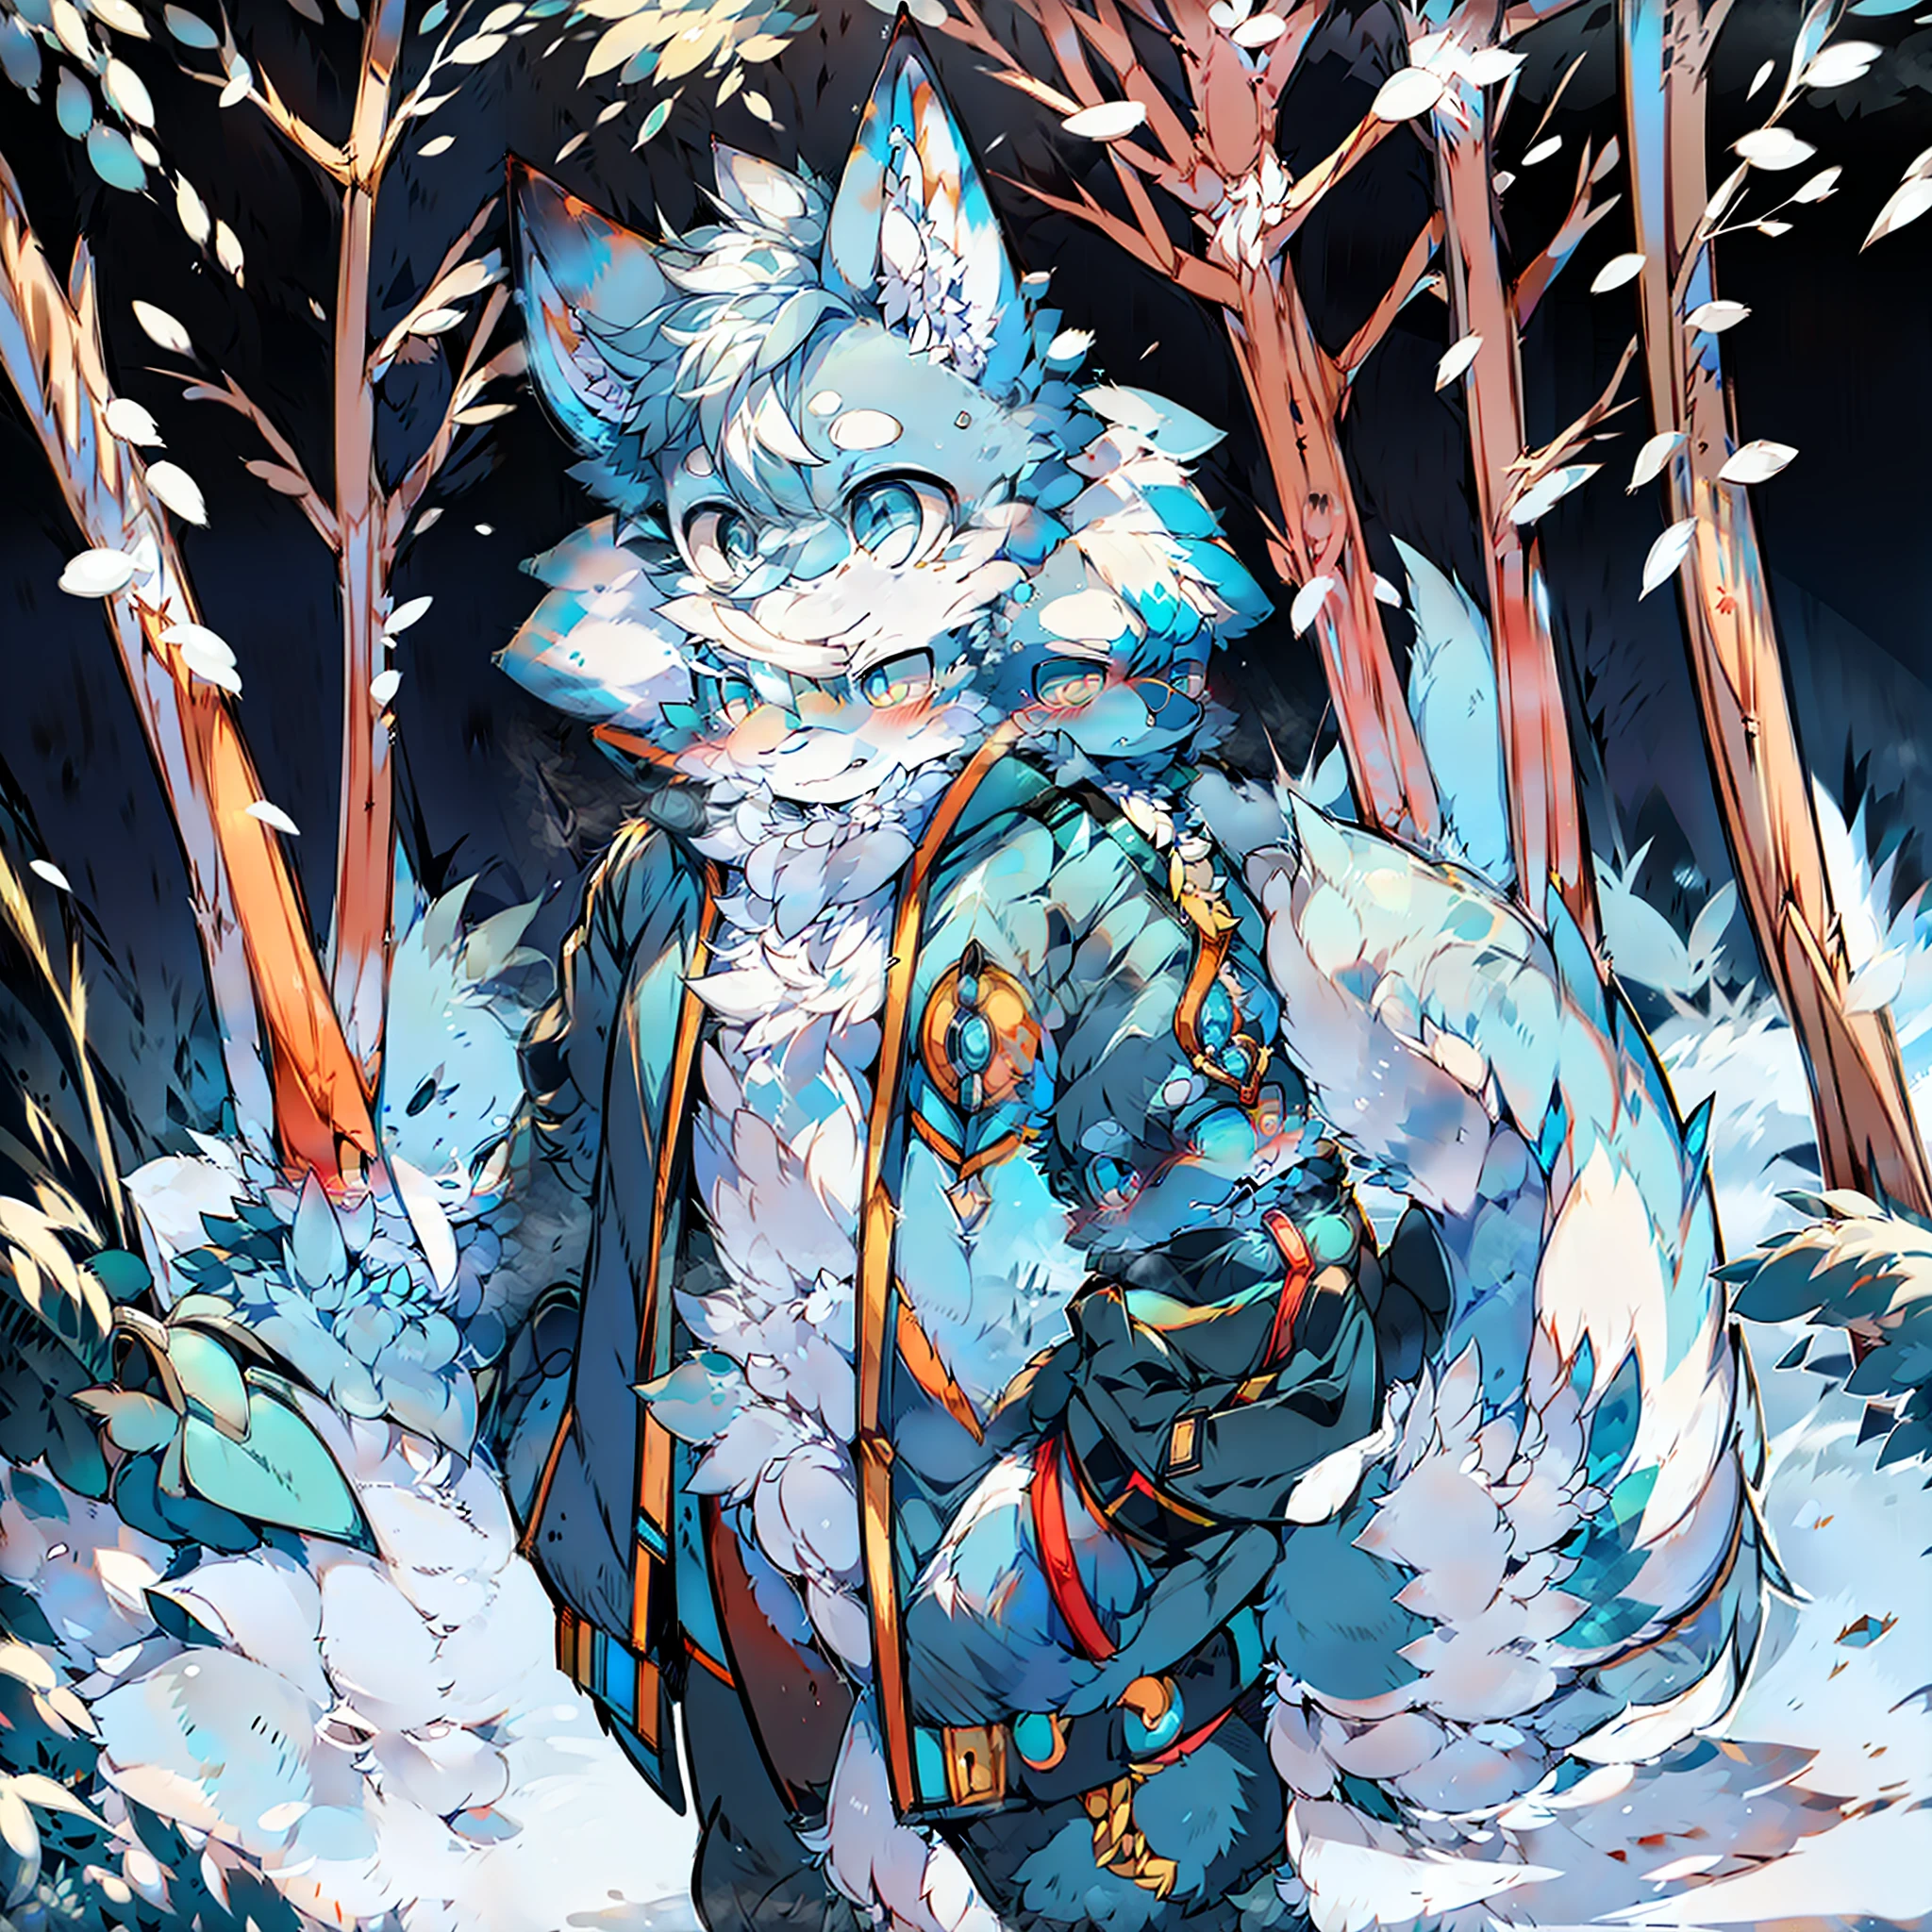 ตัวผู้ขนฟูสองตัว สุนัขจิ้งจอกลายสีขาวสีฟ้า หางใหญ่ยืนสวมแจ็กเก็ตผ้าฝ้ายสีฟ้าหิมะภูเขาหิมะ